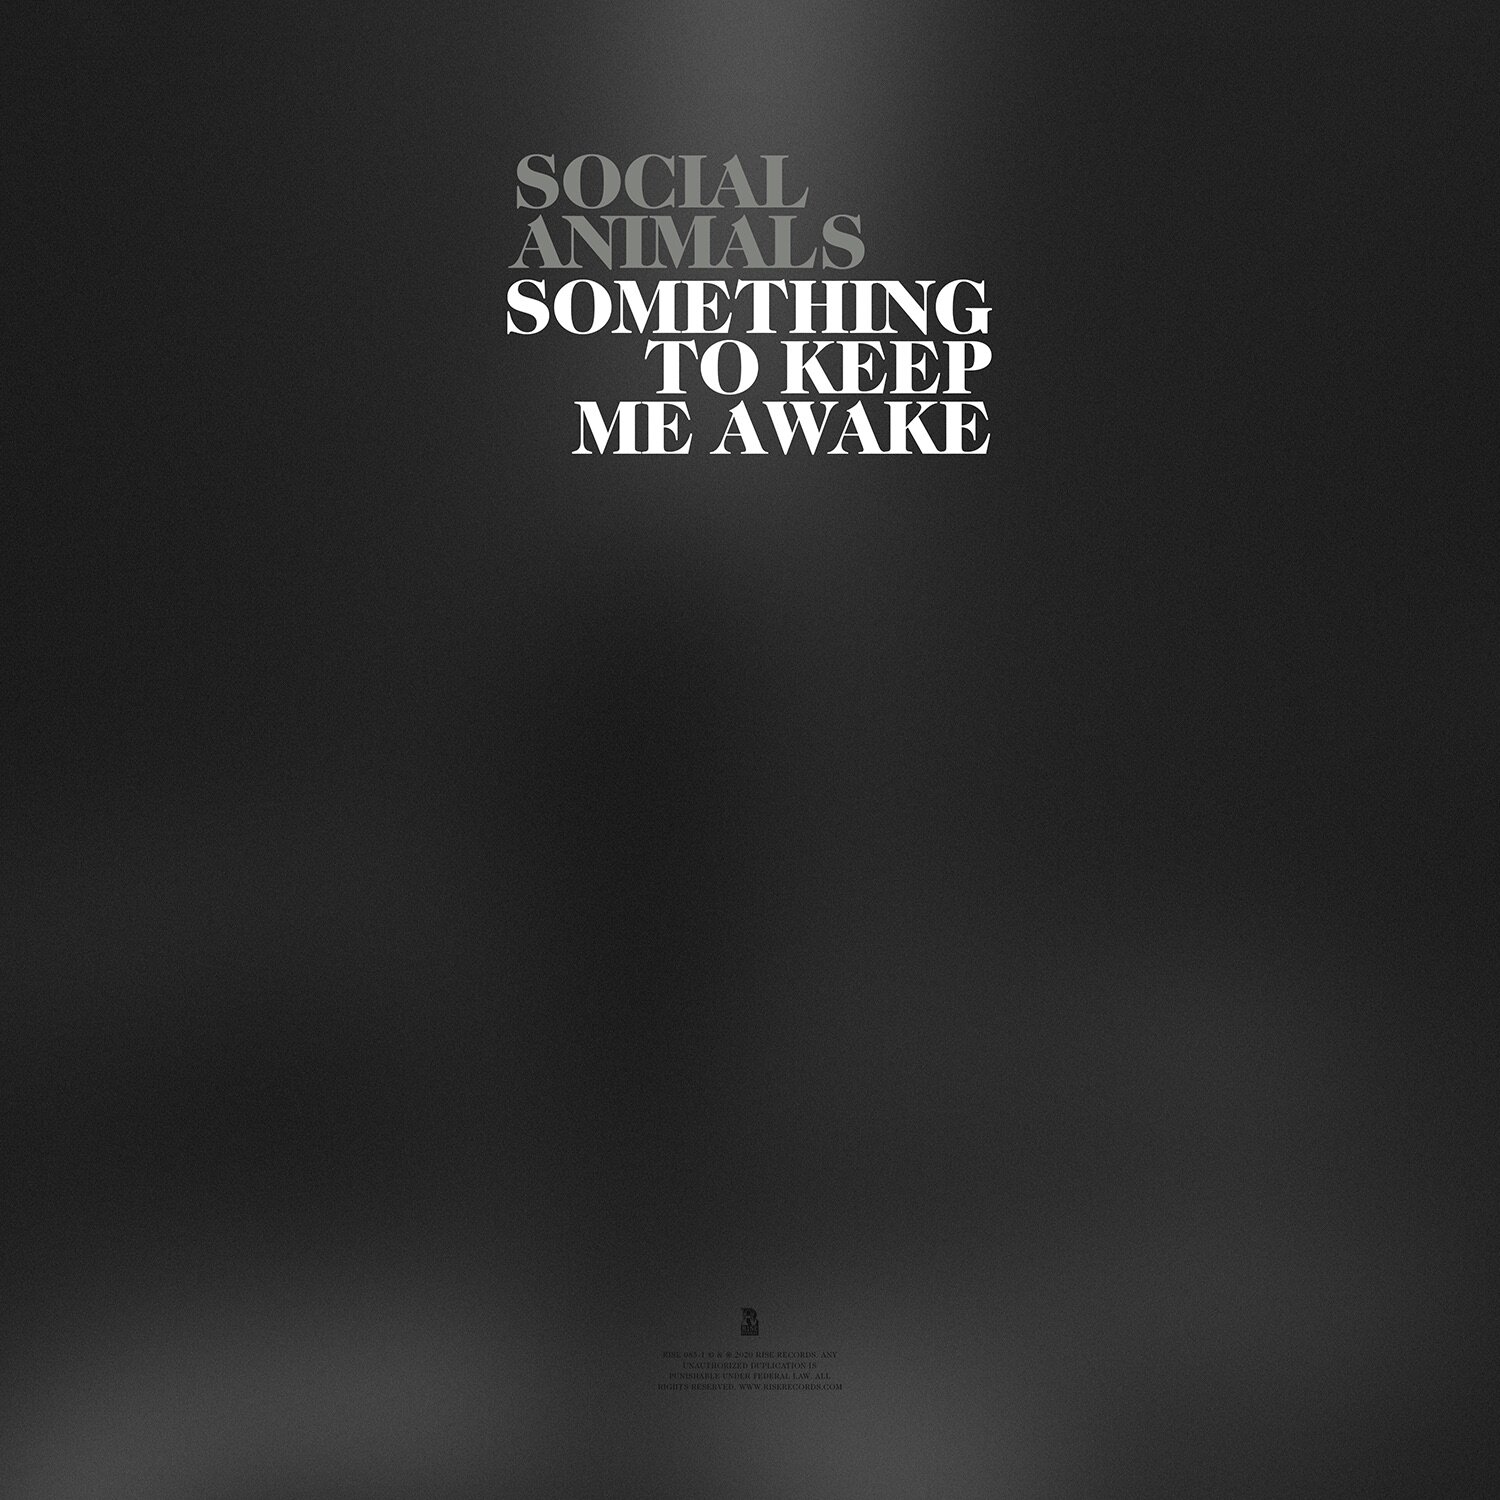 Social Animals - "Something to Keep Me Awake" - Single